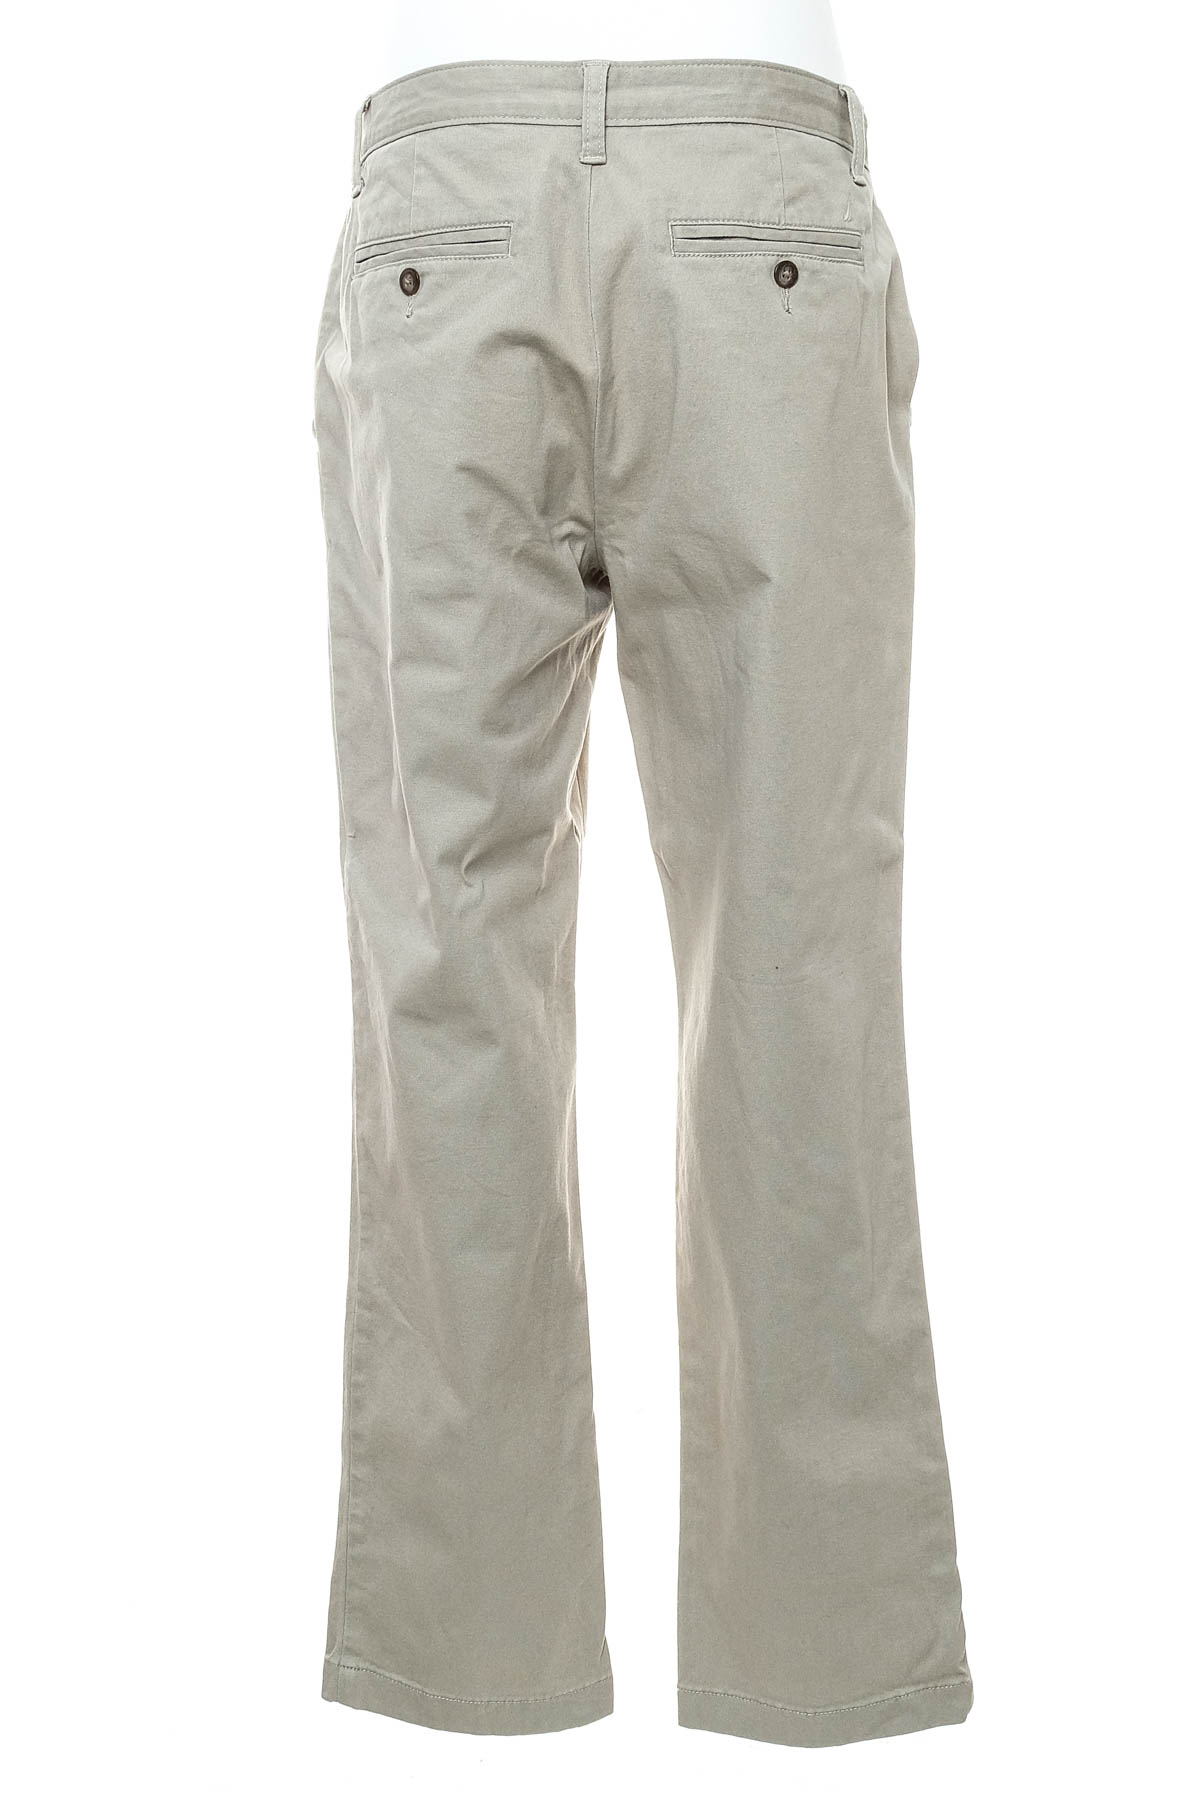 Pantalon pentru bărbați - Nautica - 1